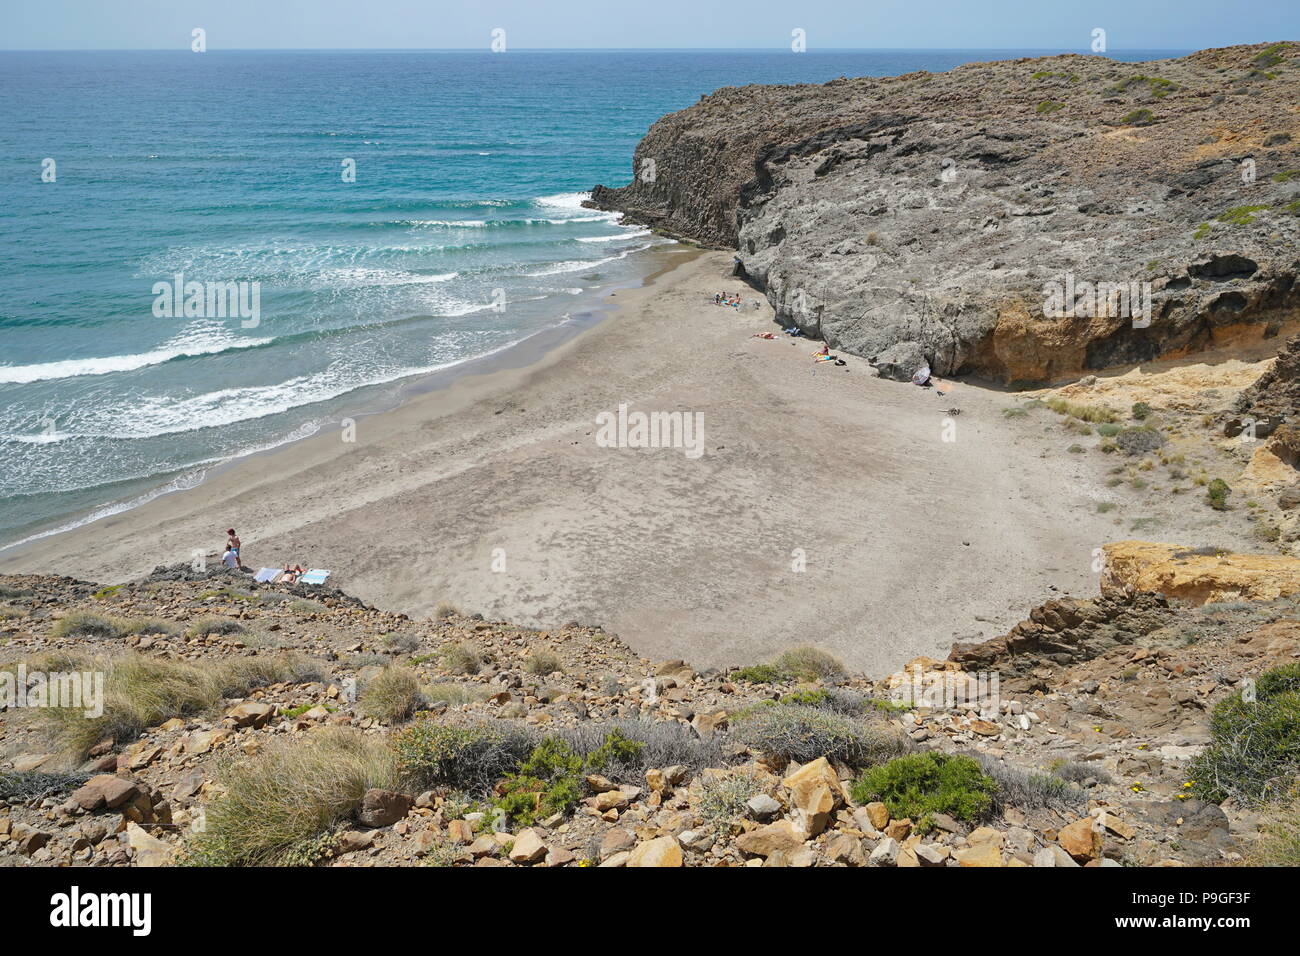 An der felsigen Küste mit Sandstrand in Cabo de Gata-Níjar Natural Park, Playa del Barronal, Mittelmeer, Almeria, Andalusien, Spanien Stockfoto